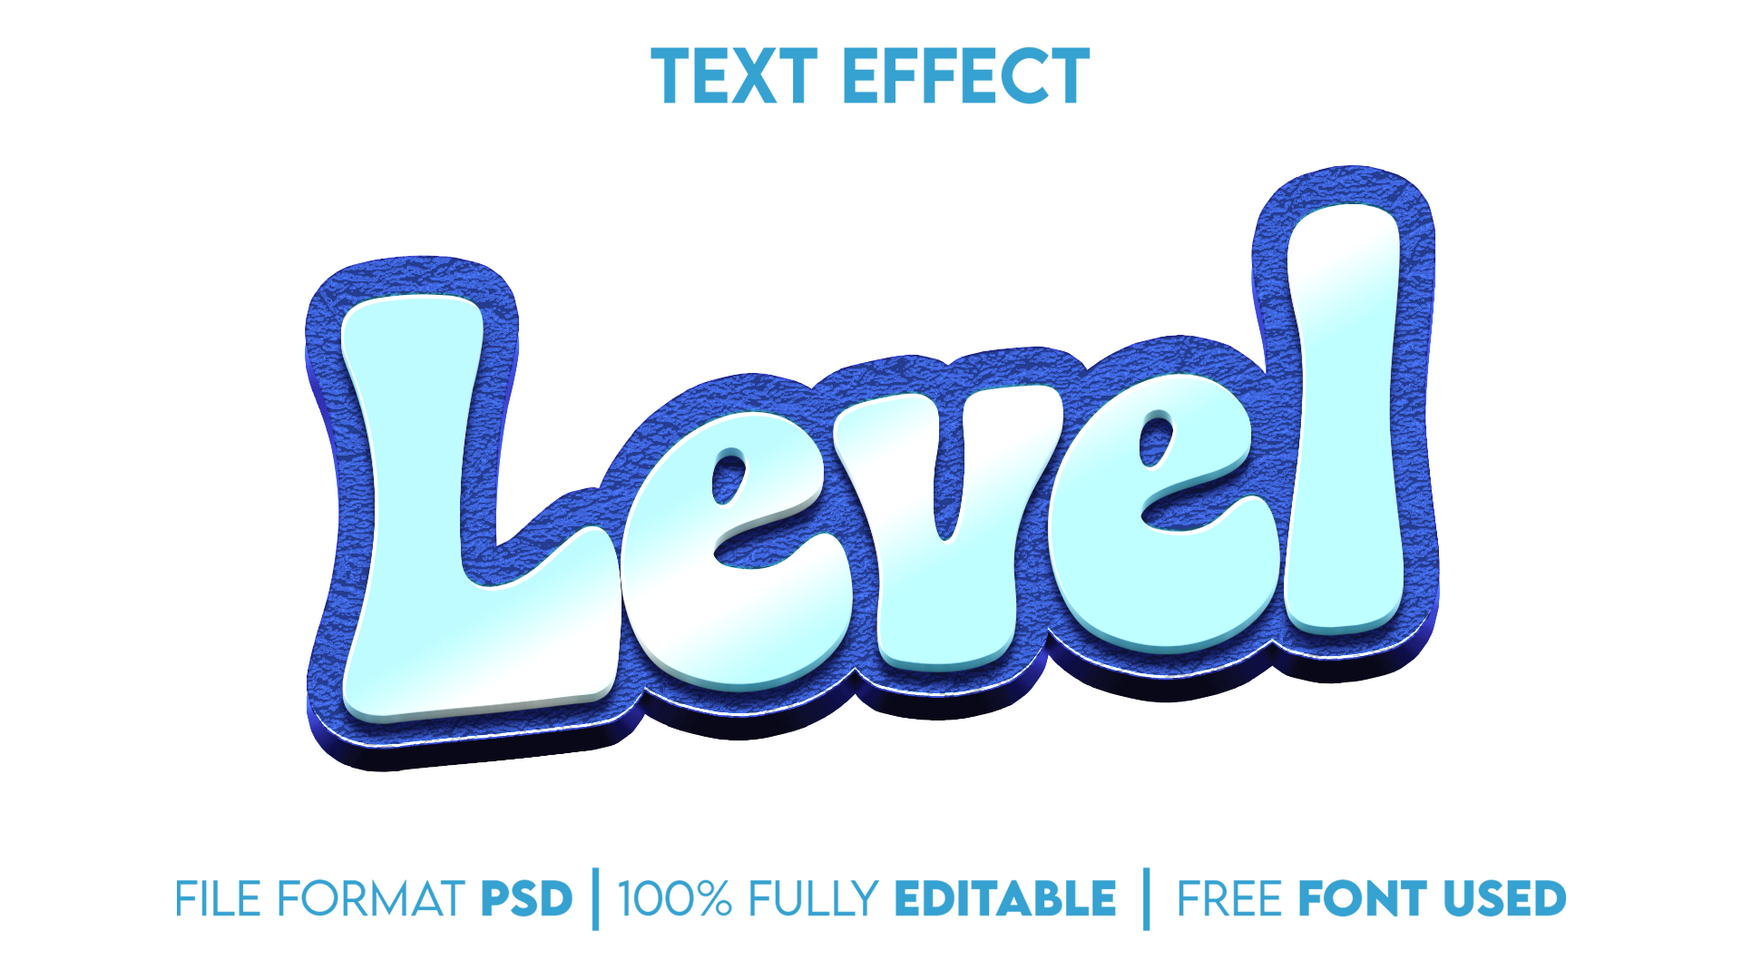 level editable text effect psd